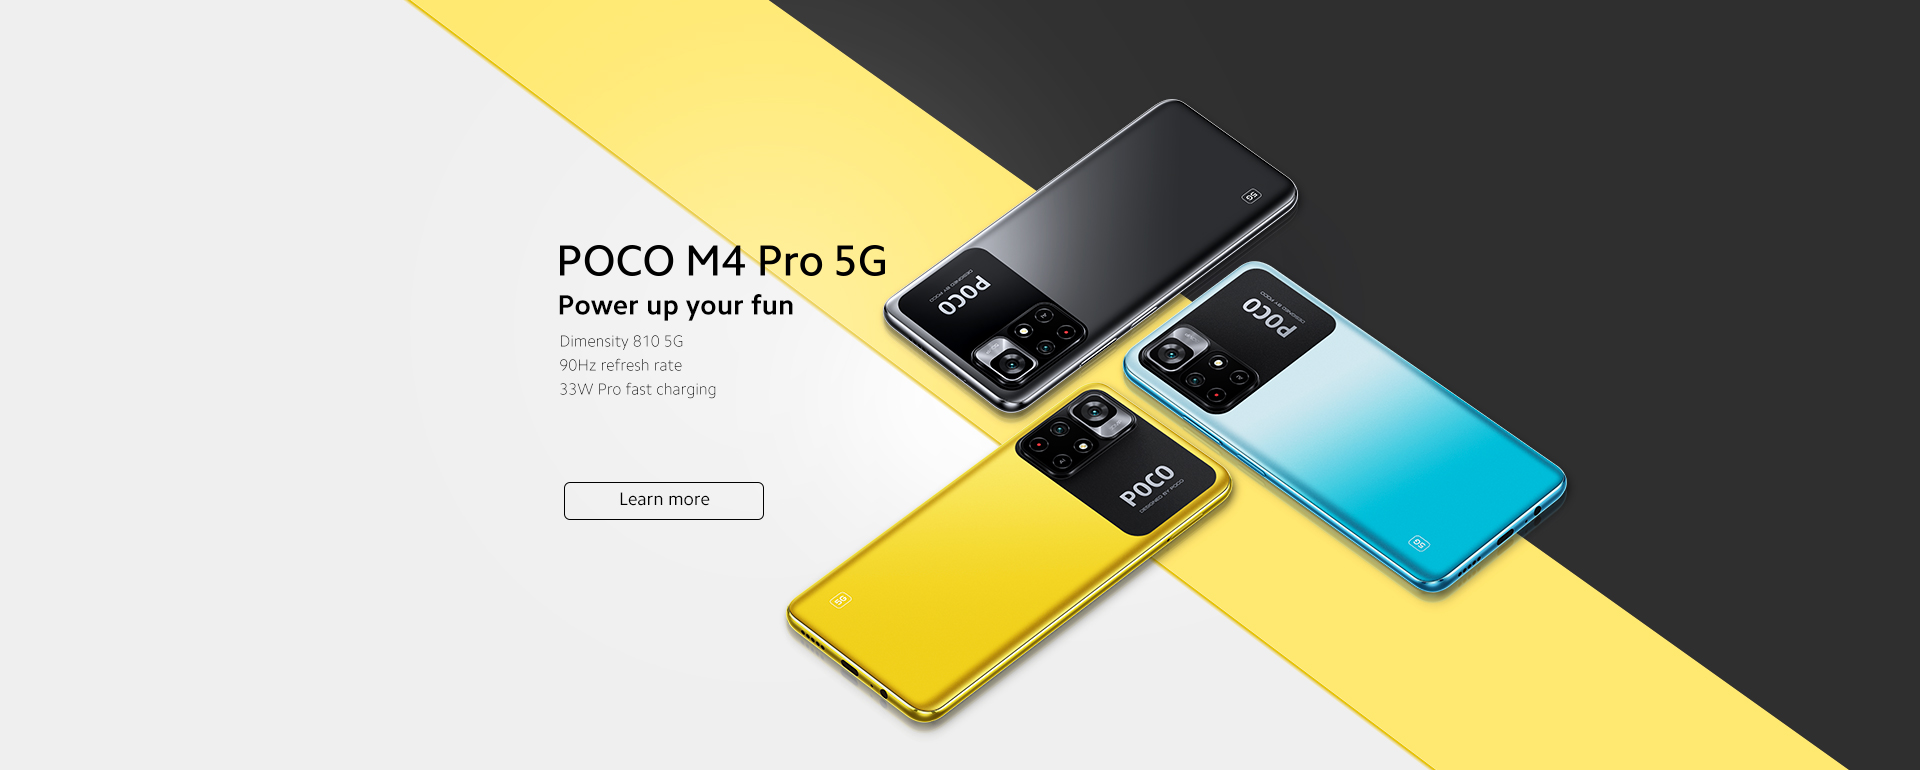 Xiaomi Poco X 4